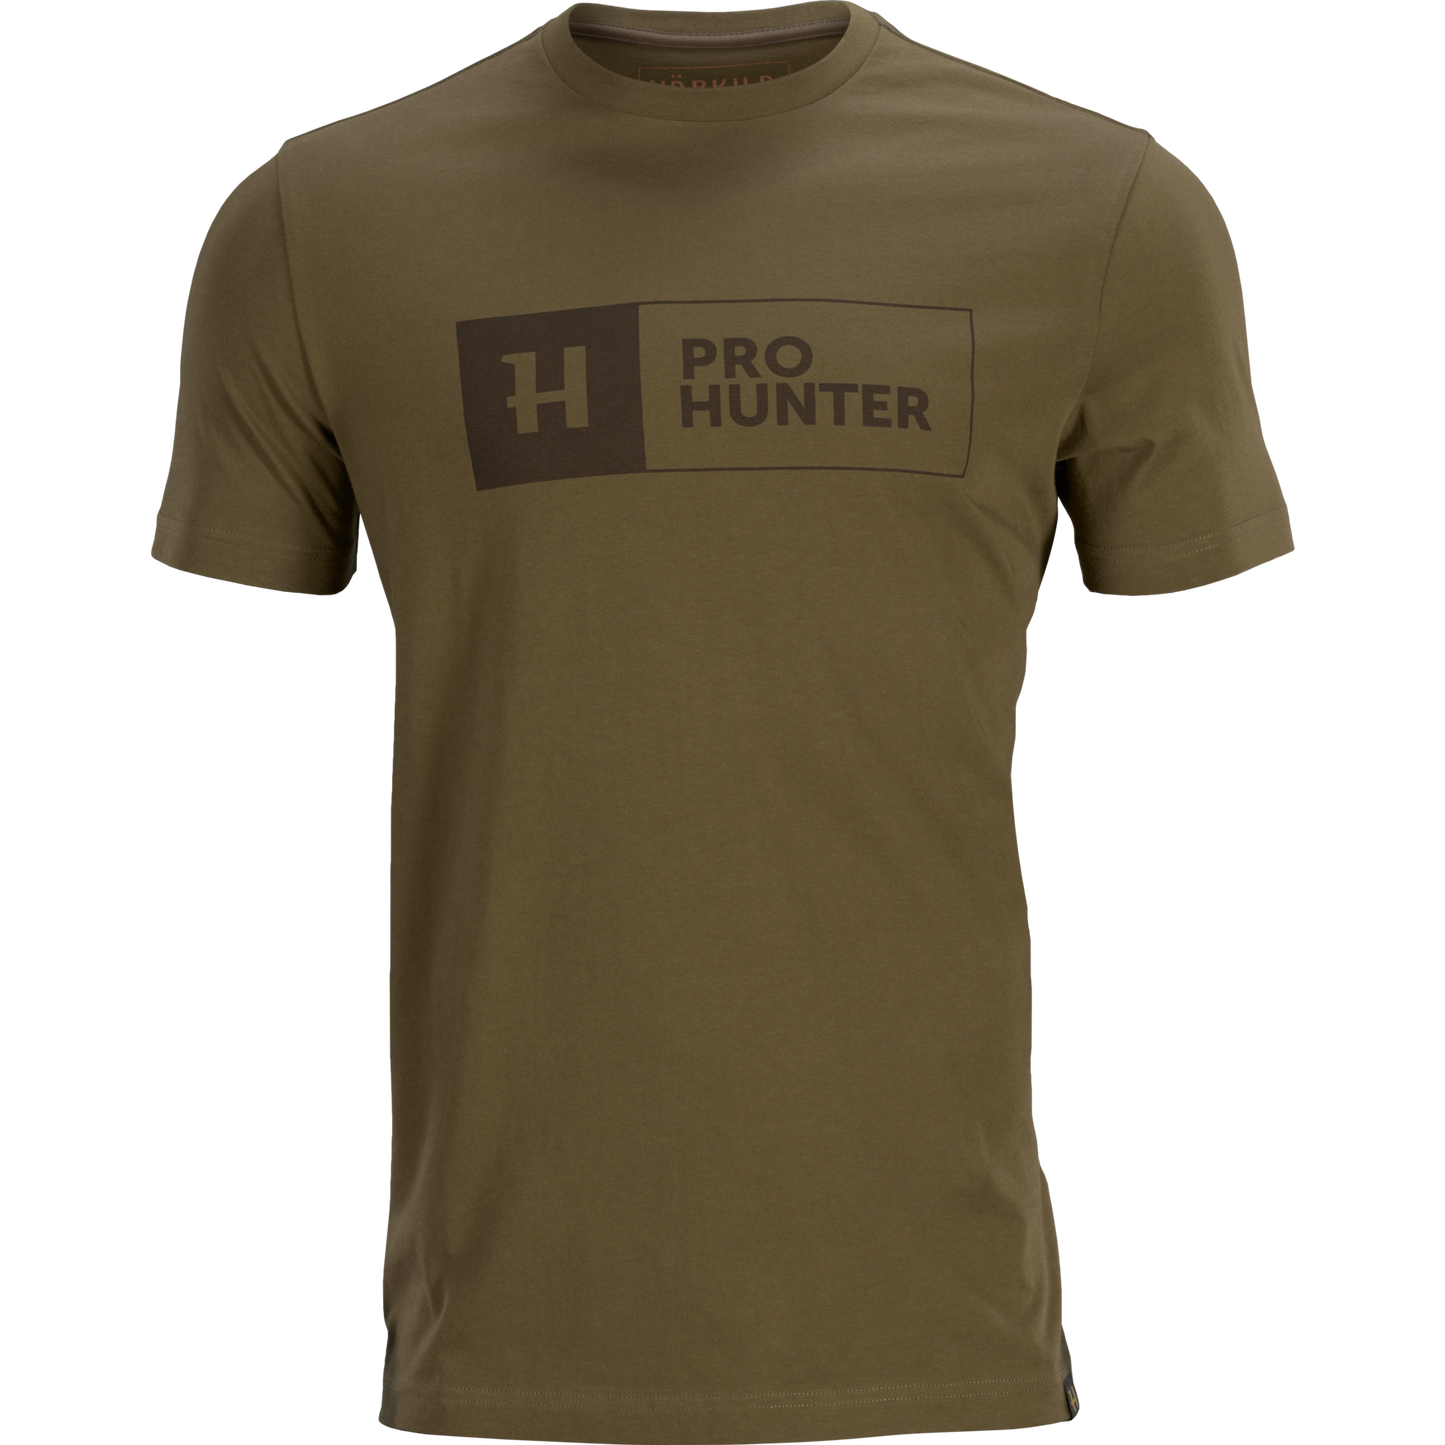 Pro Hunter S/S t-shirt